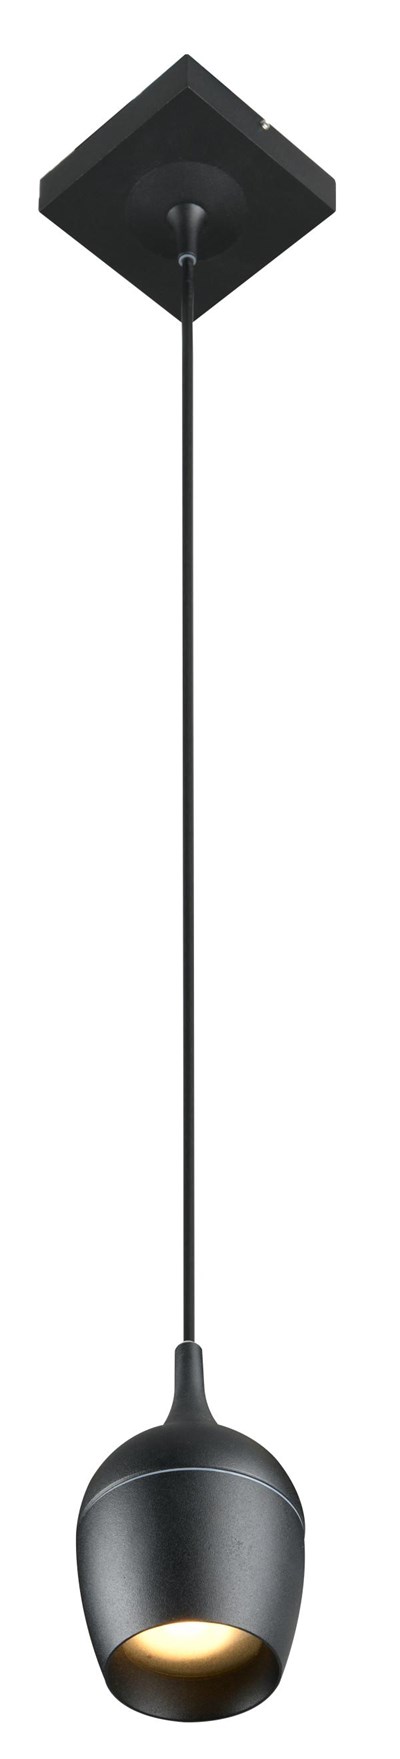 Lucide PRESTON - Lámpara colgante Baño - Ø 10 cm - 1xGU10 - IP44 - Negro